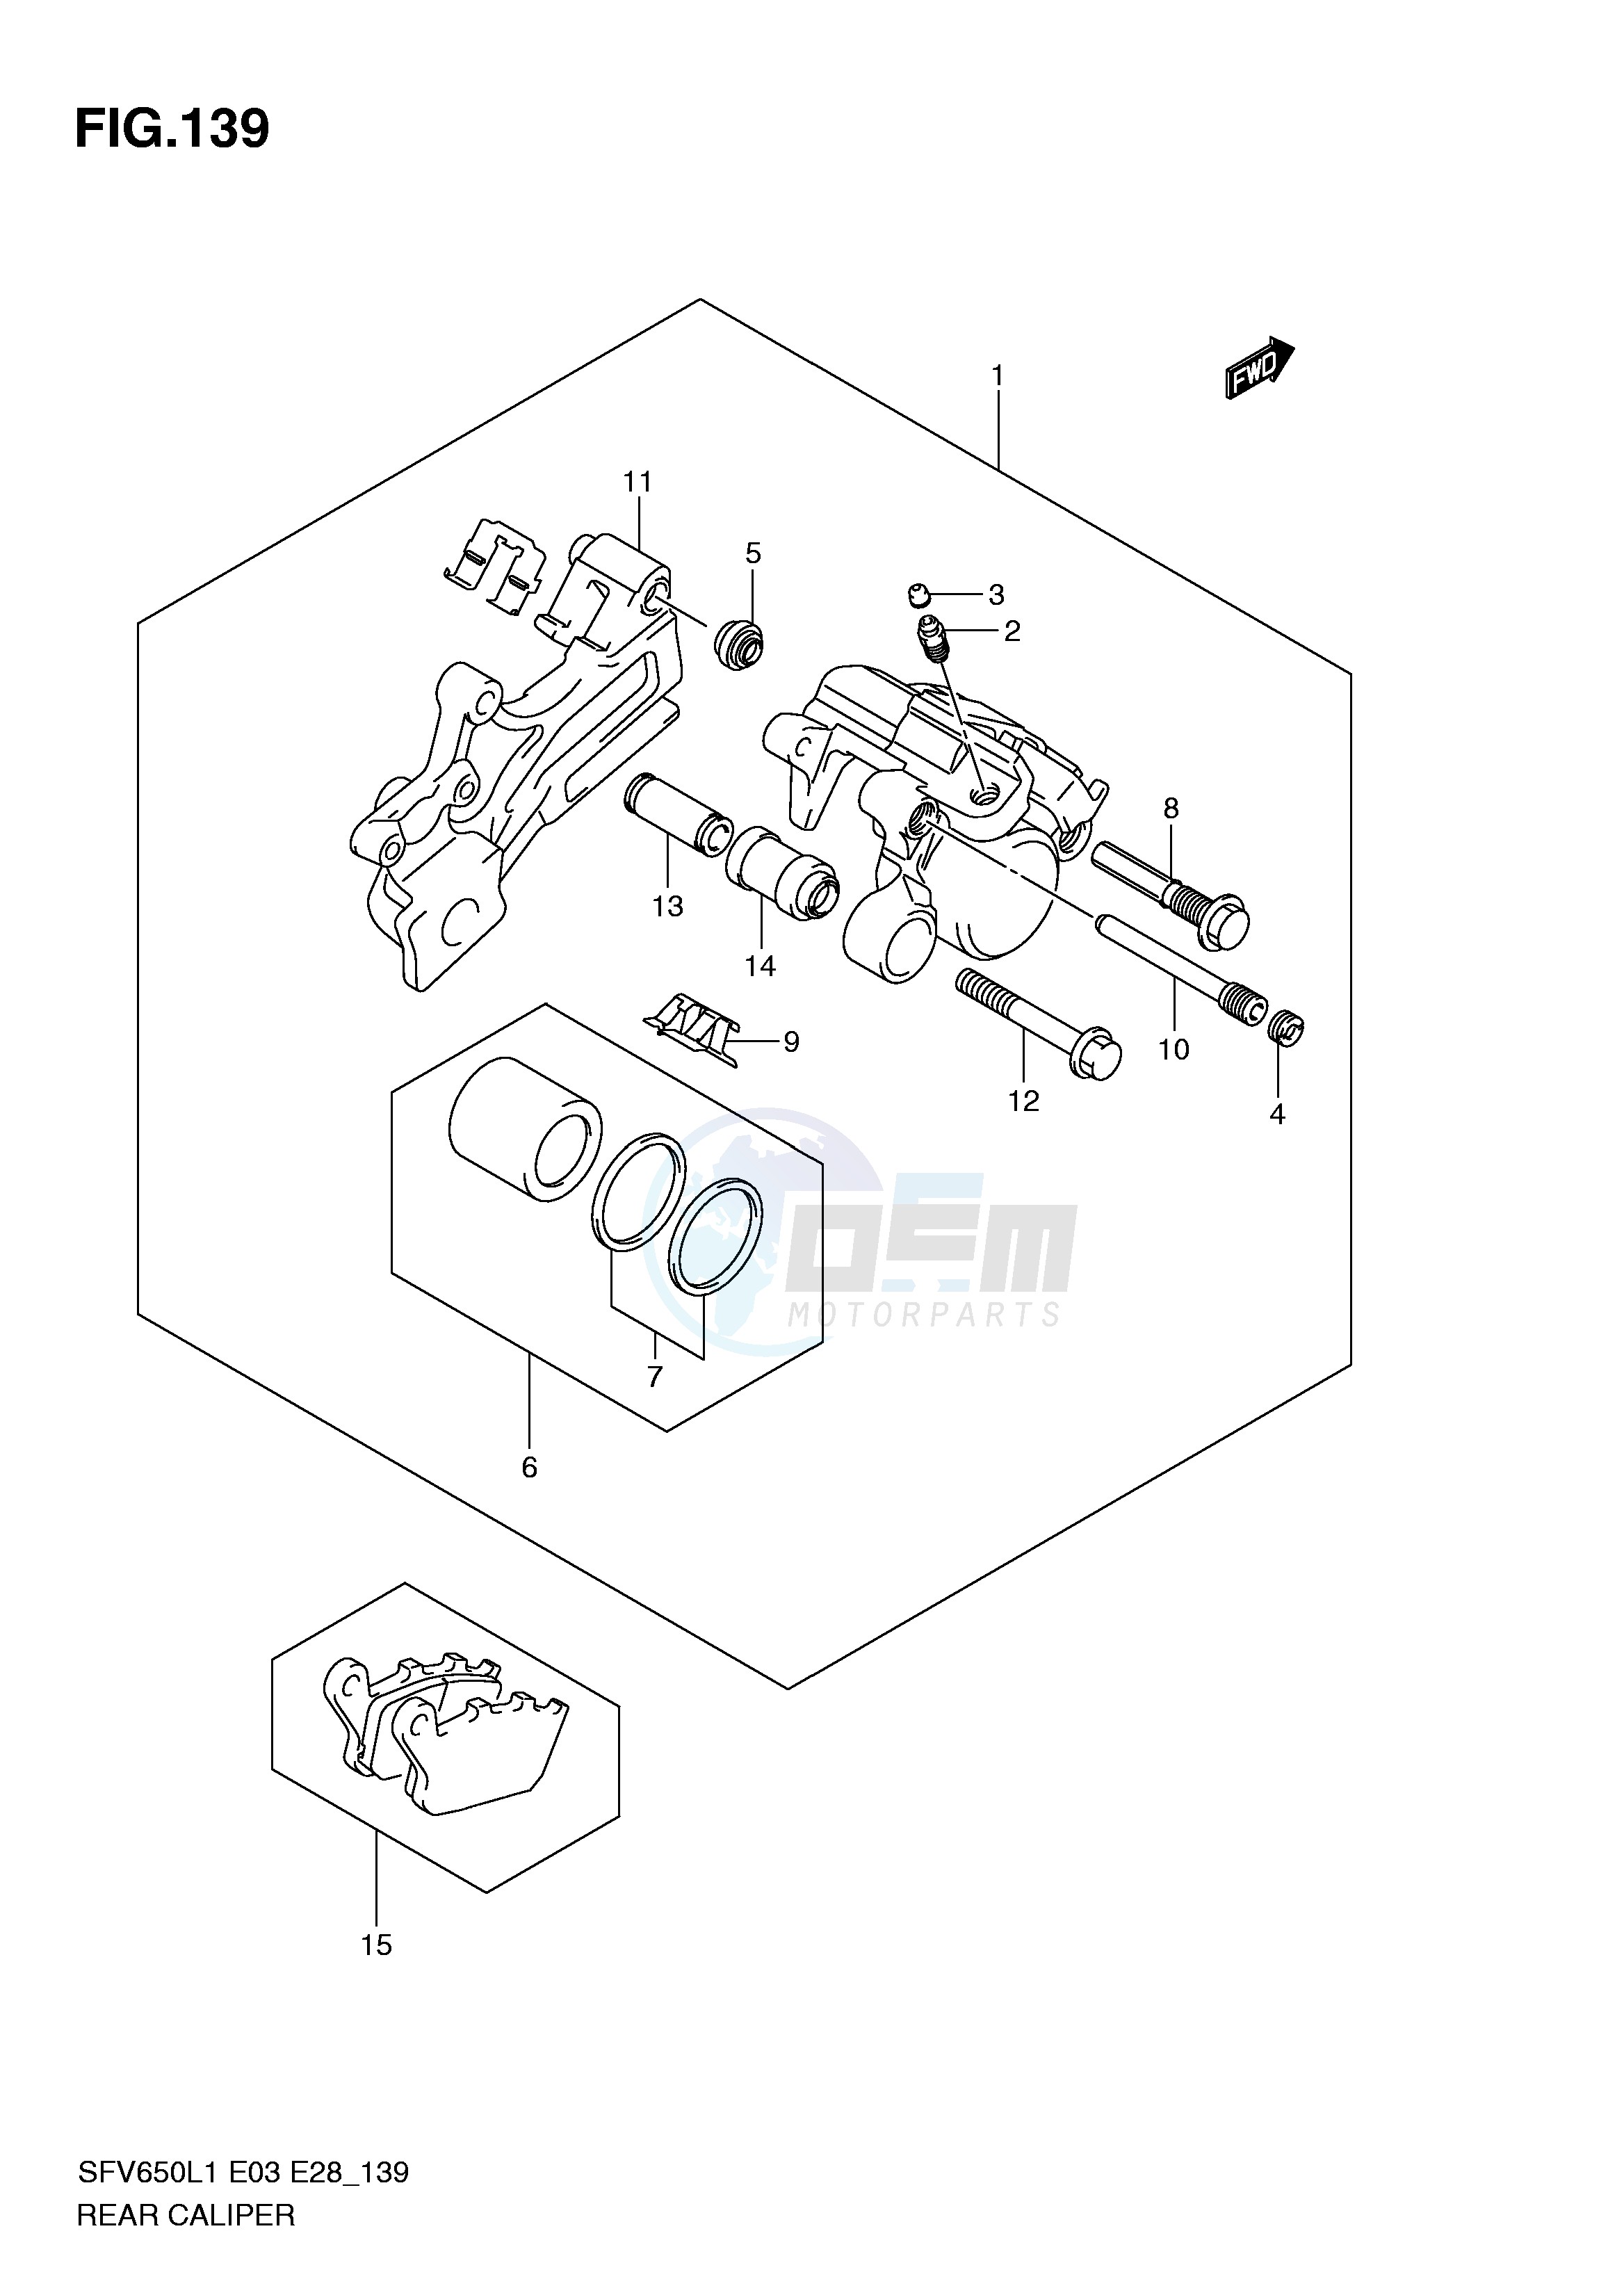 REAR CALIPER (SFV650L1 E3) blueprint